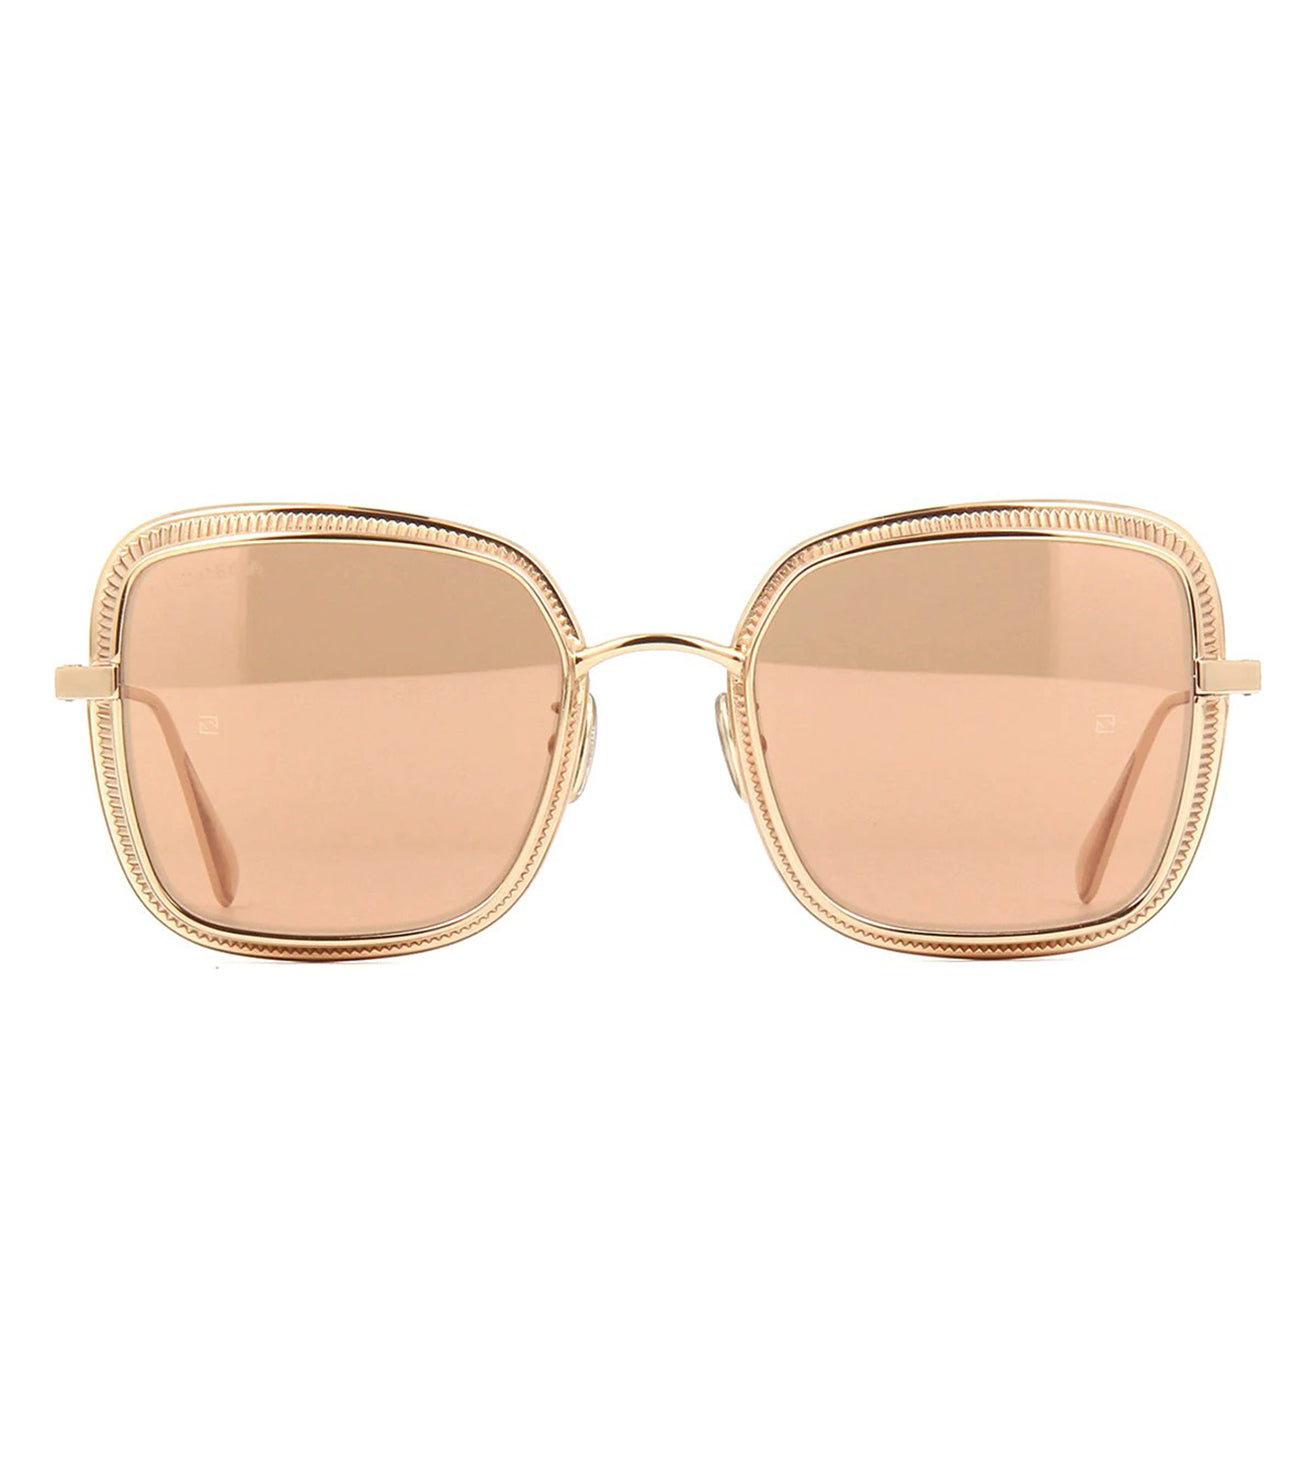 Omega Women's Silver Square Sunglasses